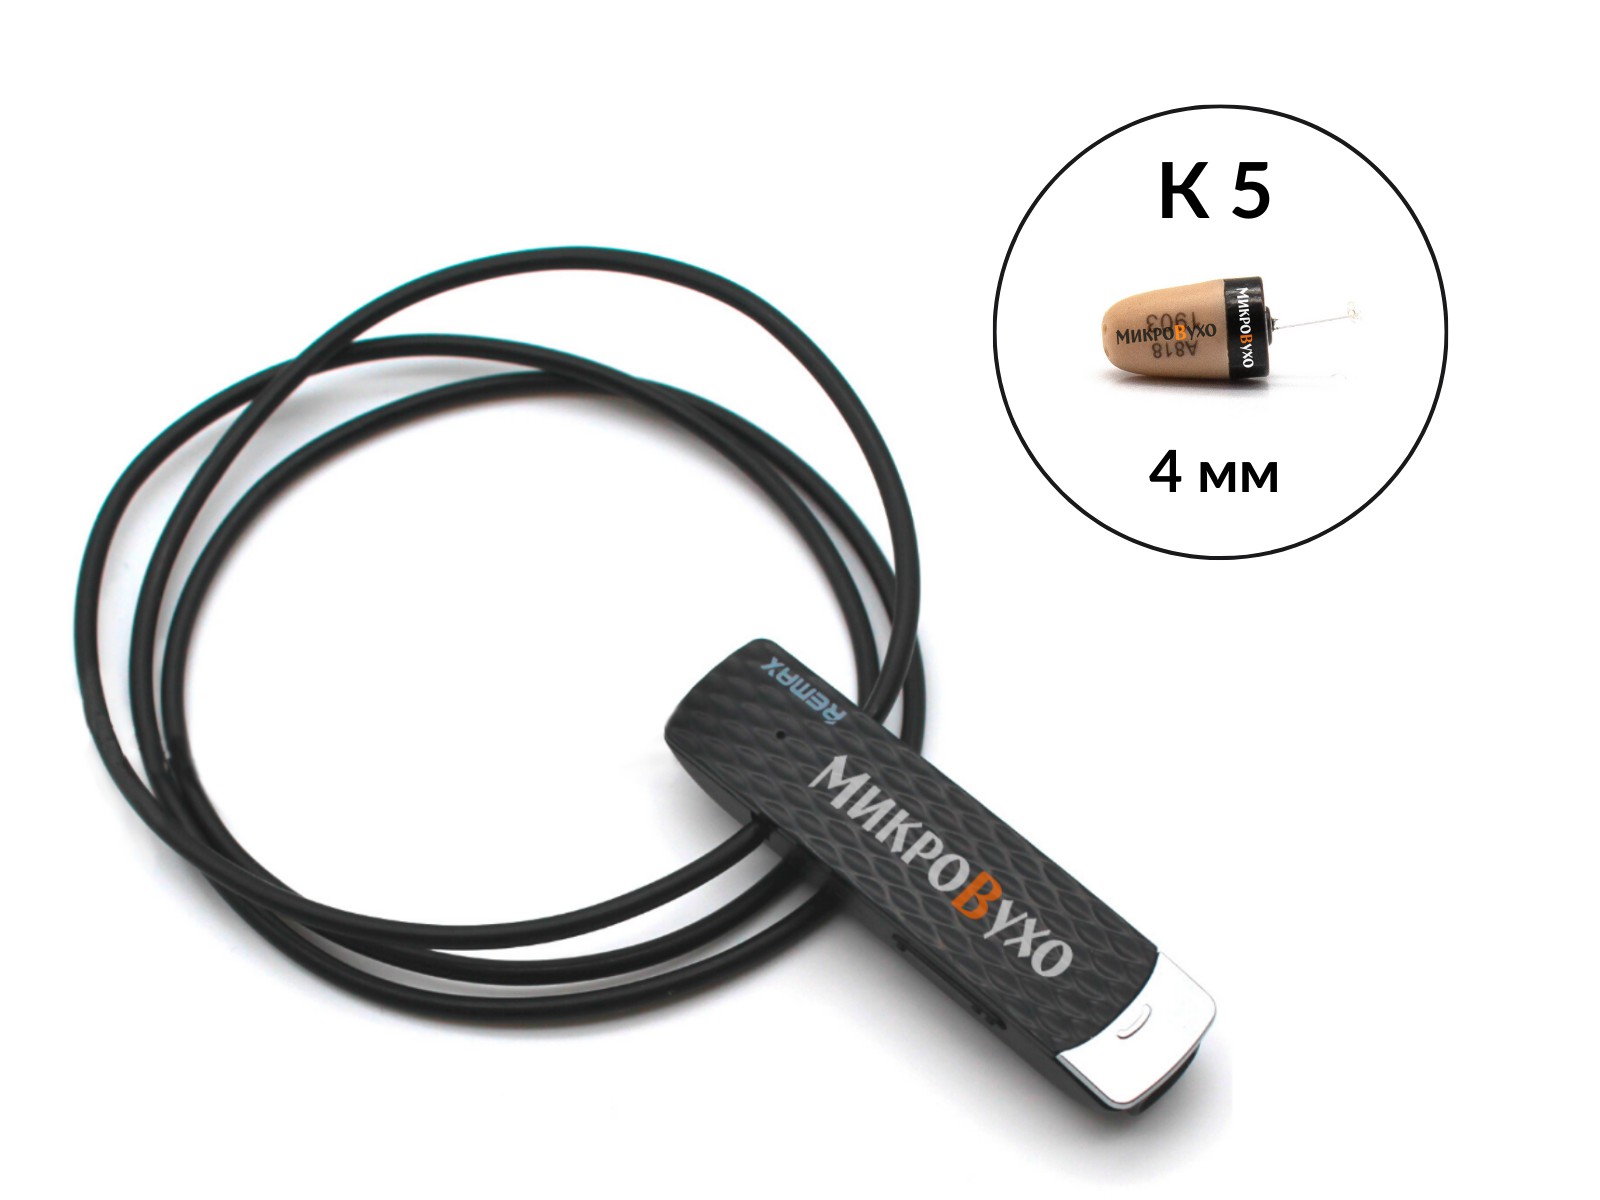 Гарнитура Bluetooth Remax с капсульным микронаушником K5 4 мм - изображение 13